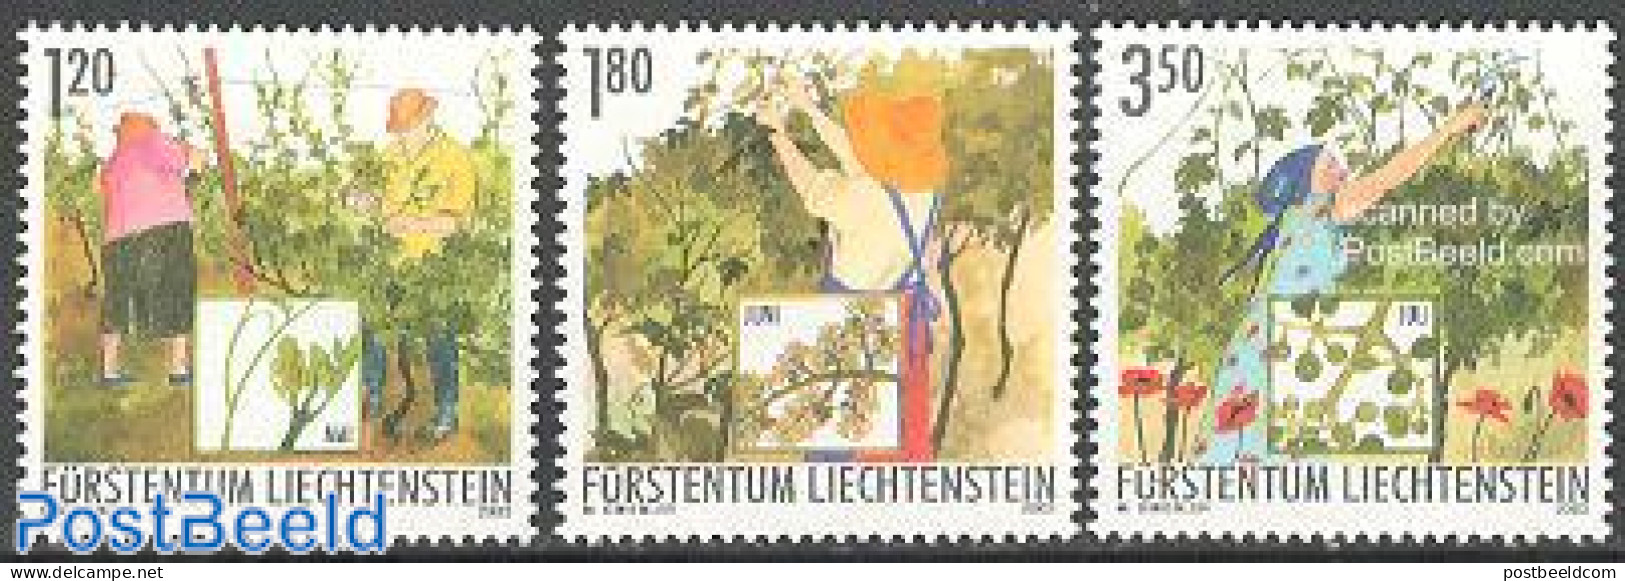 Liechtenstein 2003 Wine 3v, Mint NH, Nature - Various - Flowers & Plants - Wine & Winery - Agriculture - Ungebraucht